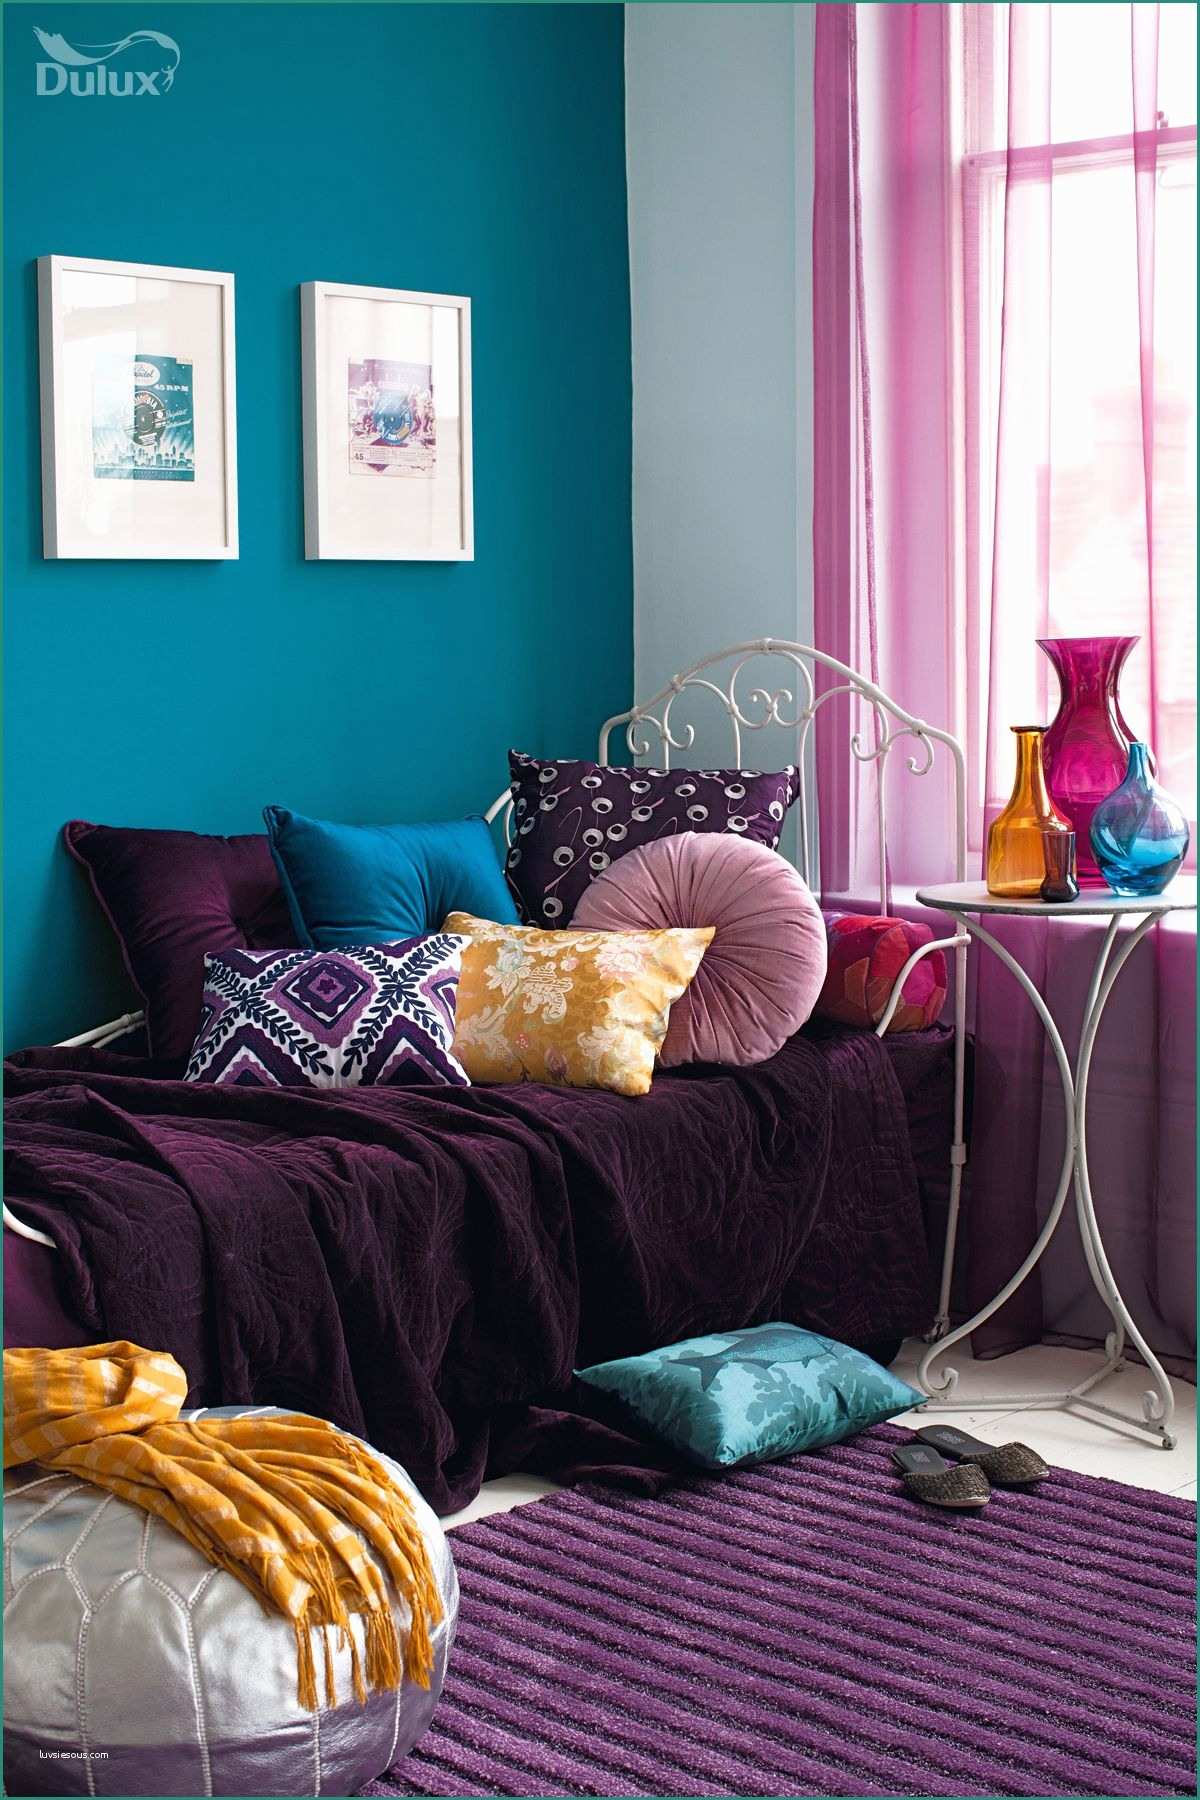 Divano Letto Posti E Diy Bedroom Ideas for Girls Boys Furniture